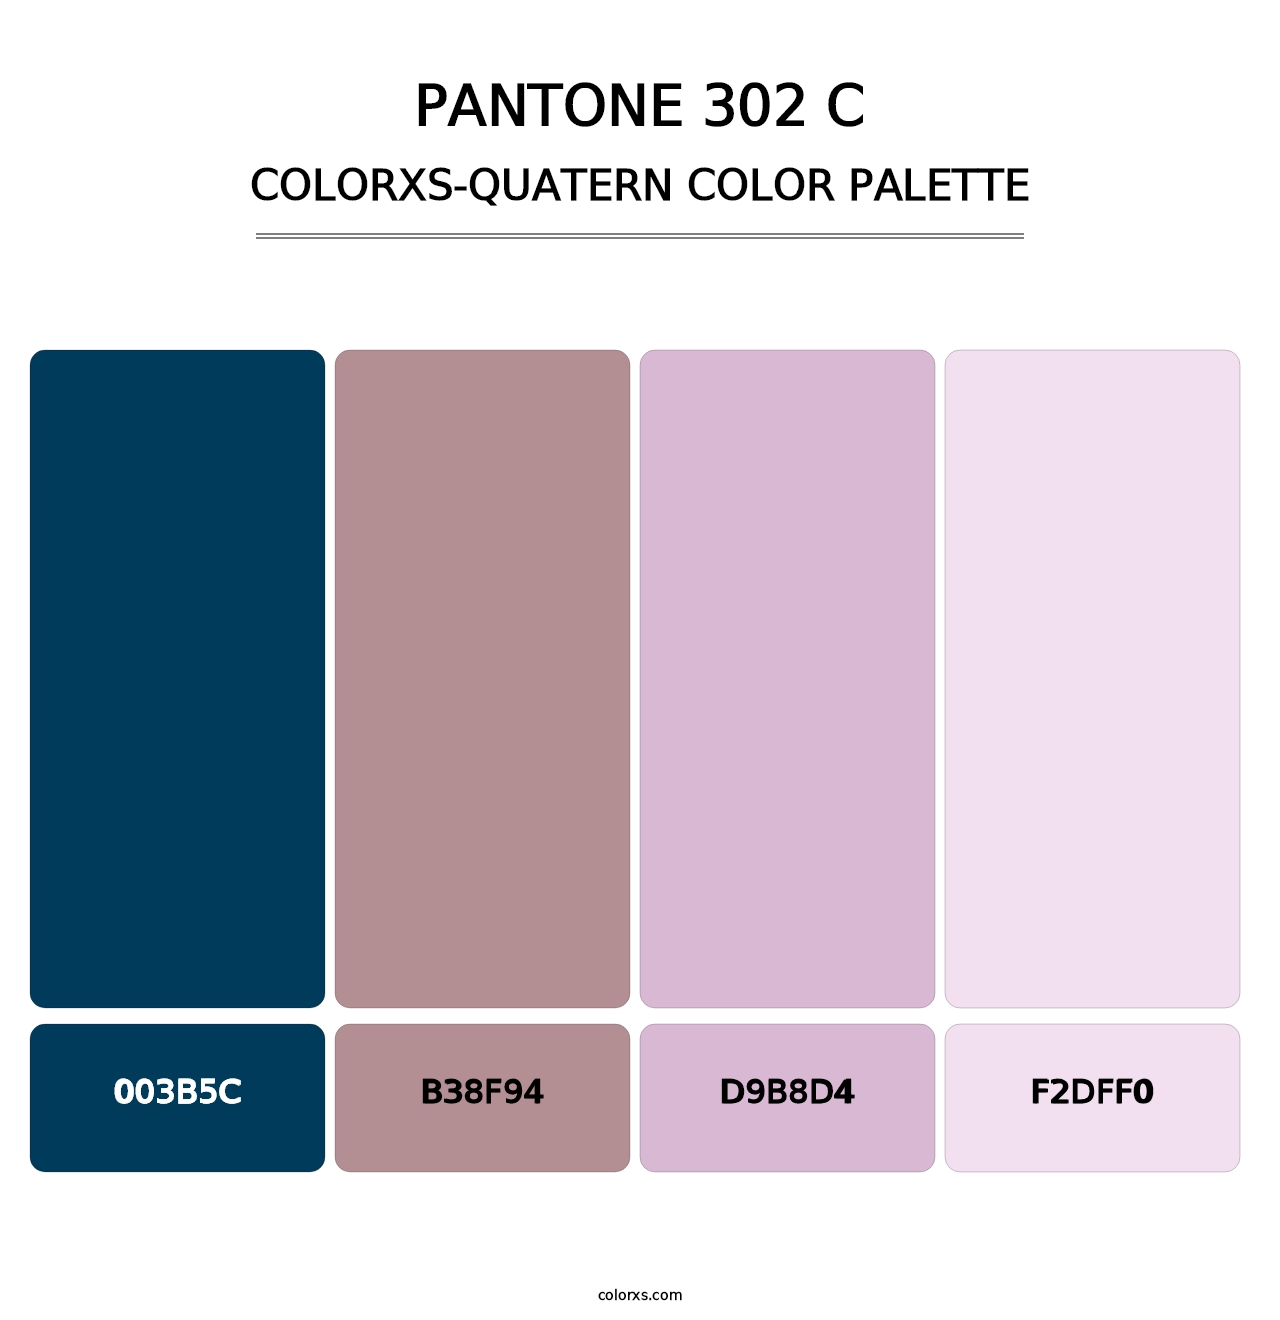 PANTONE 302 C - Colorxs Quatern Palette